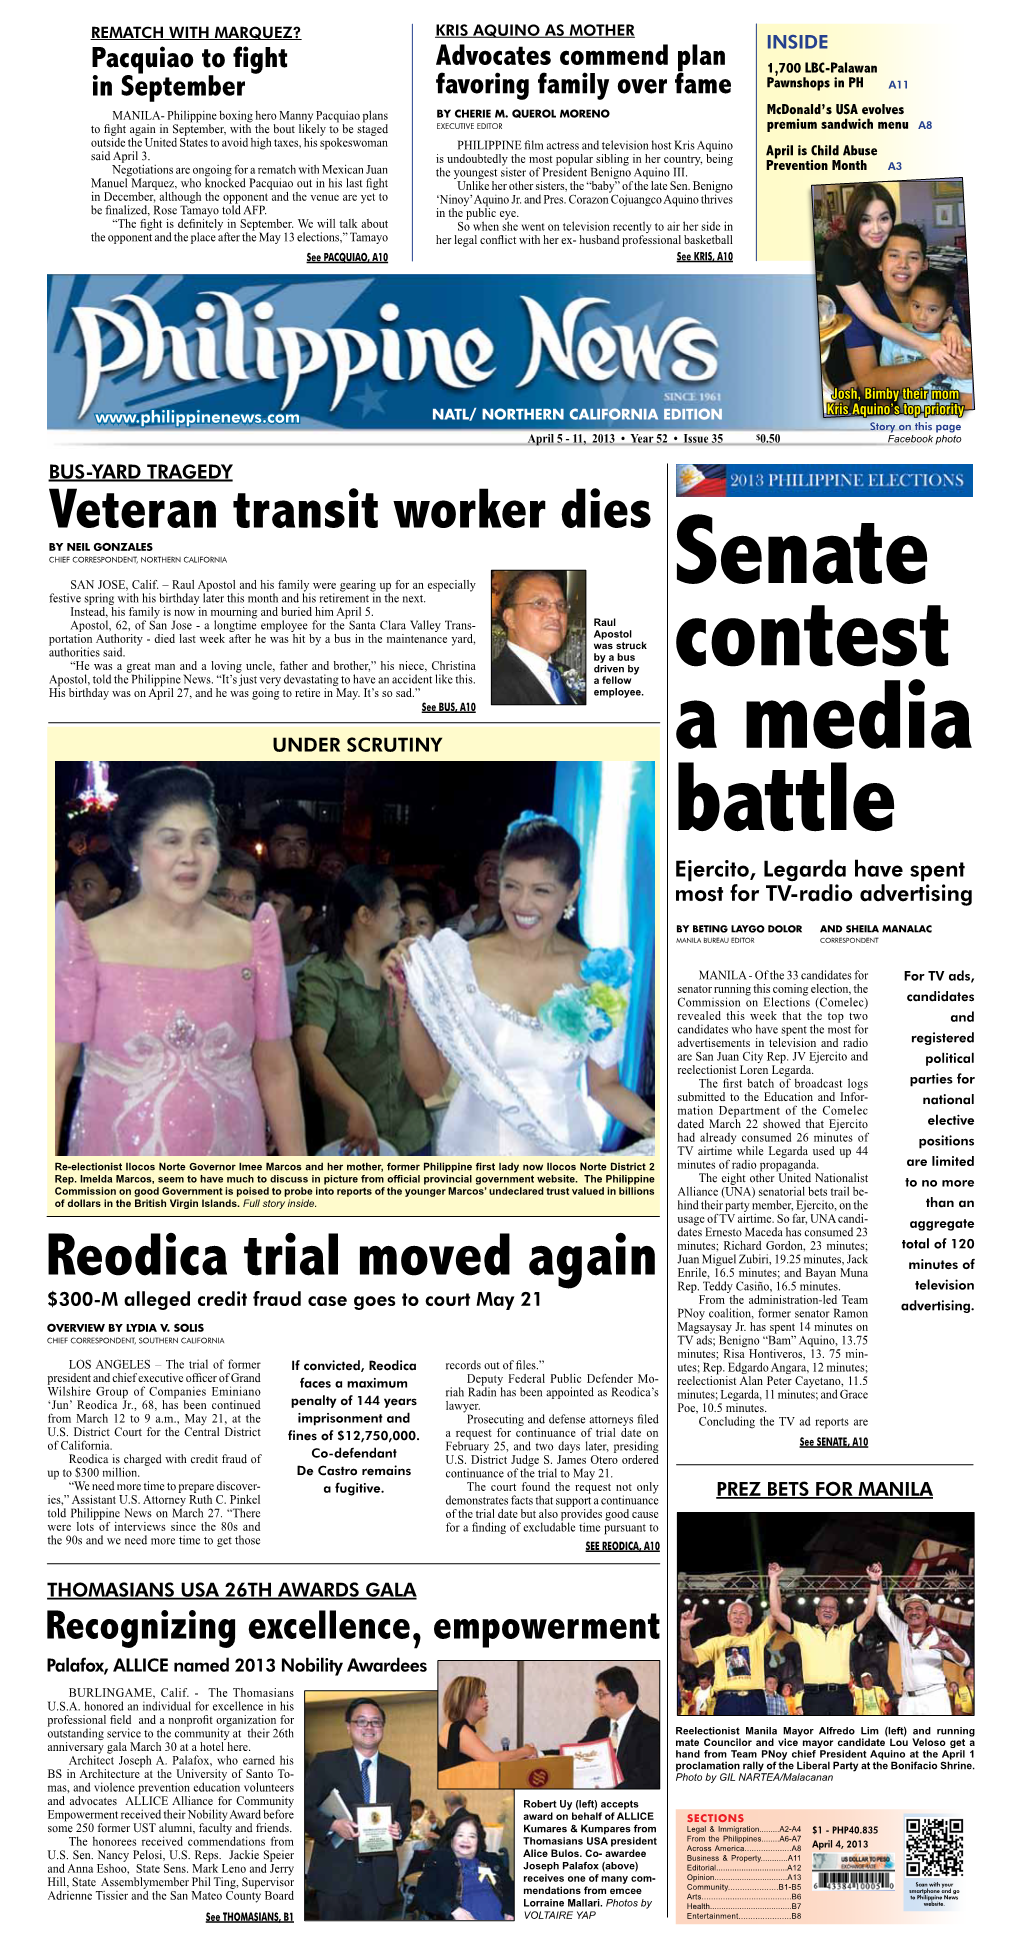 Reodica Trial Moved Again Enrile, 16.5 Minutes; and Bayan Muna Rep